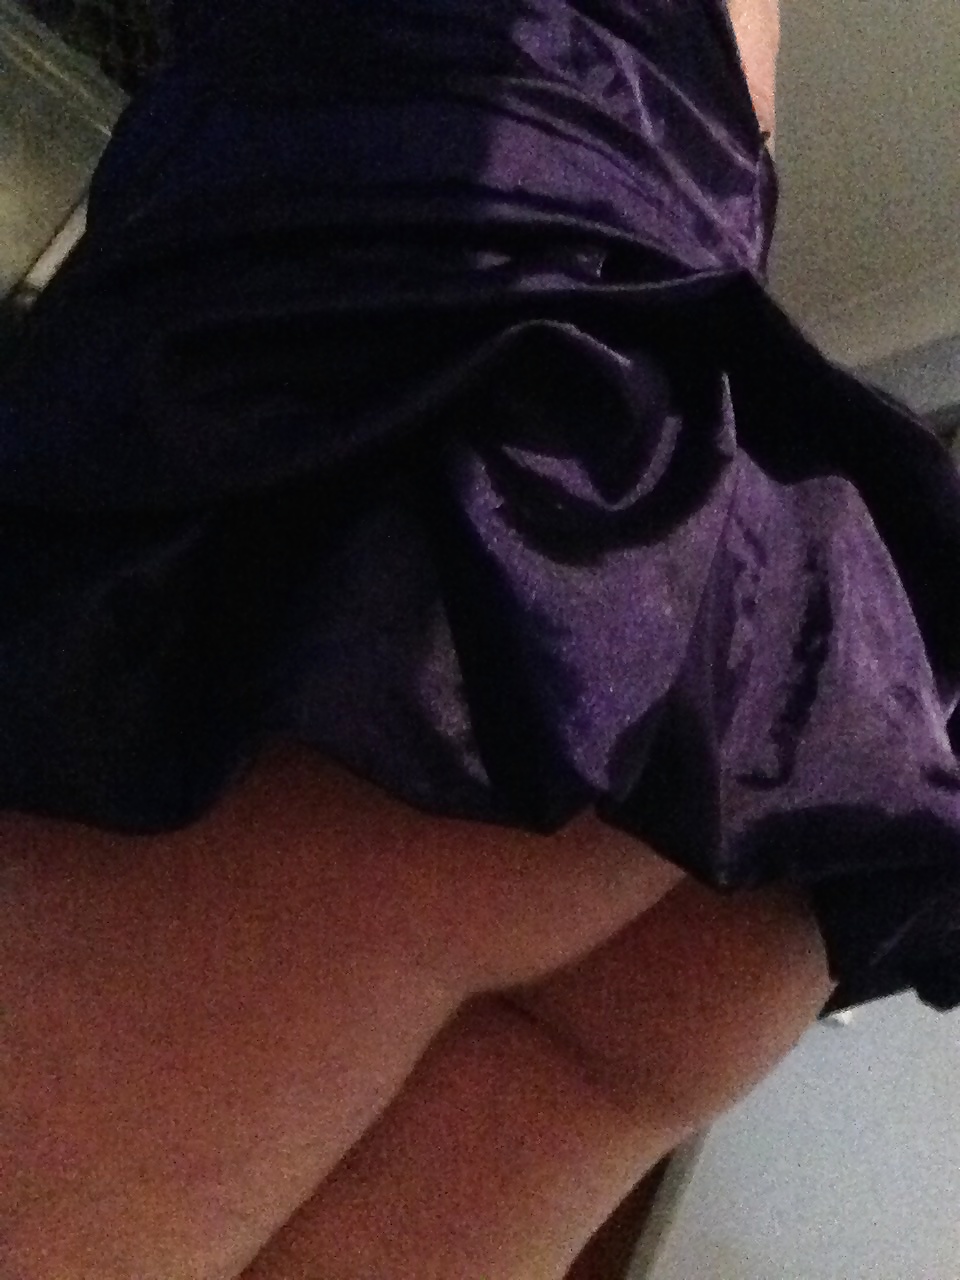 Super short purple dress curvy teen ass showing #41104174